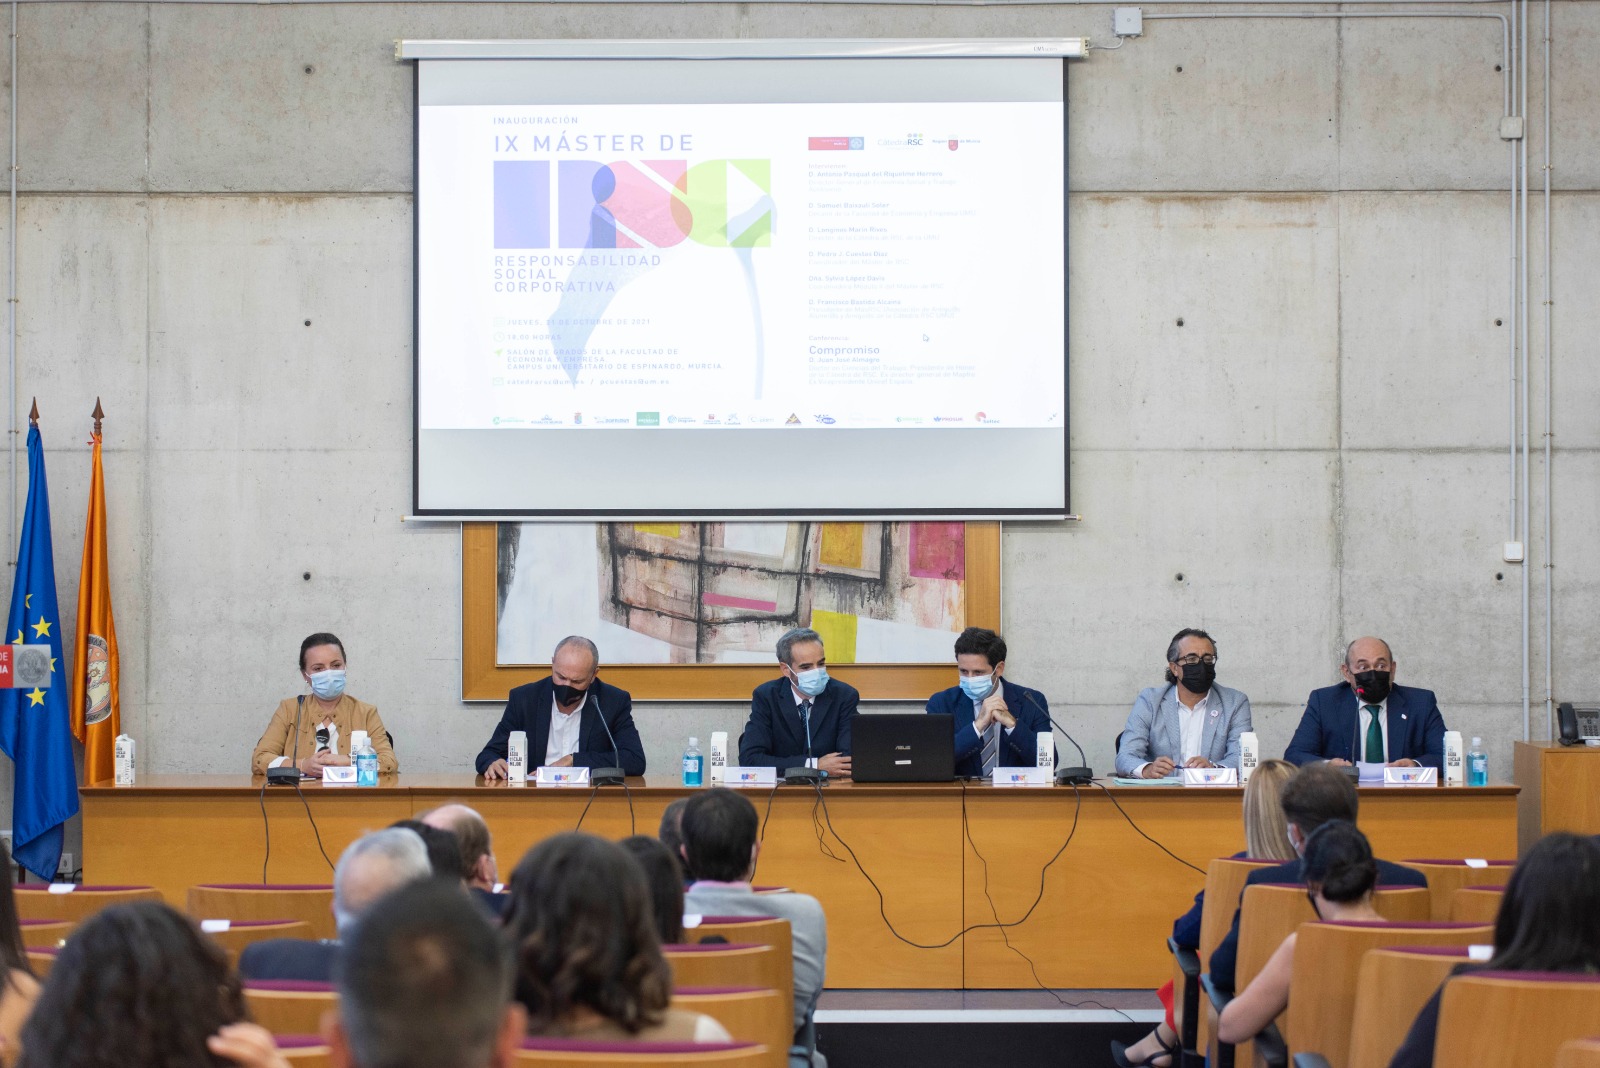 Inauguramos la IX edición del Máster en RSC de la Universidad de Murcia